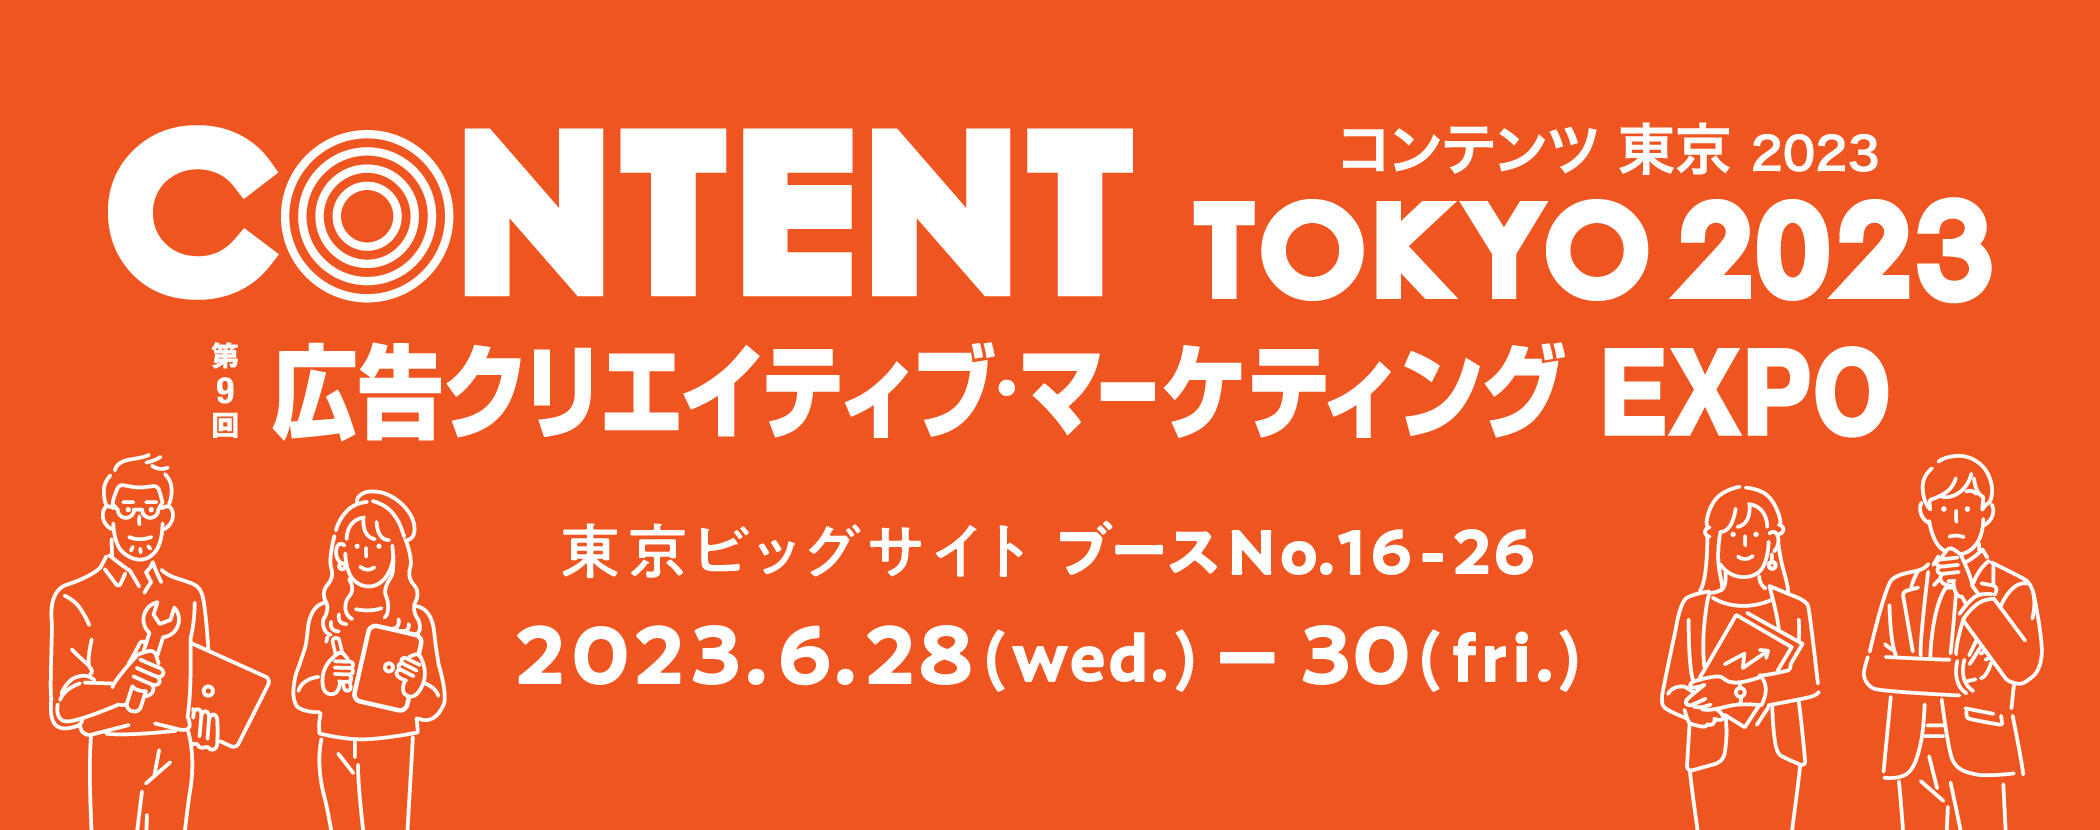 content-tokyo-2023_wan55hp-bnr_2100-830.jpg